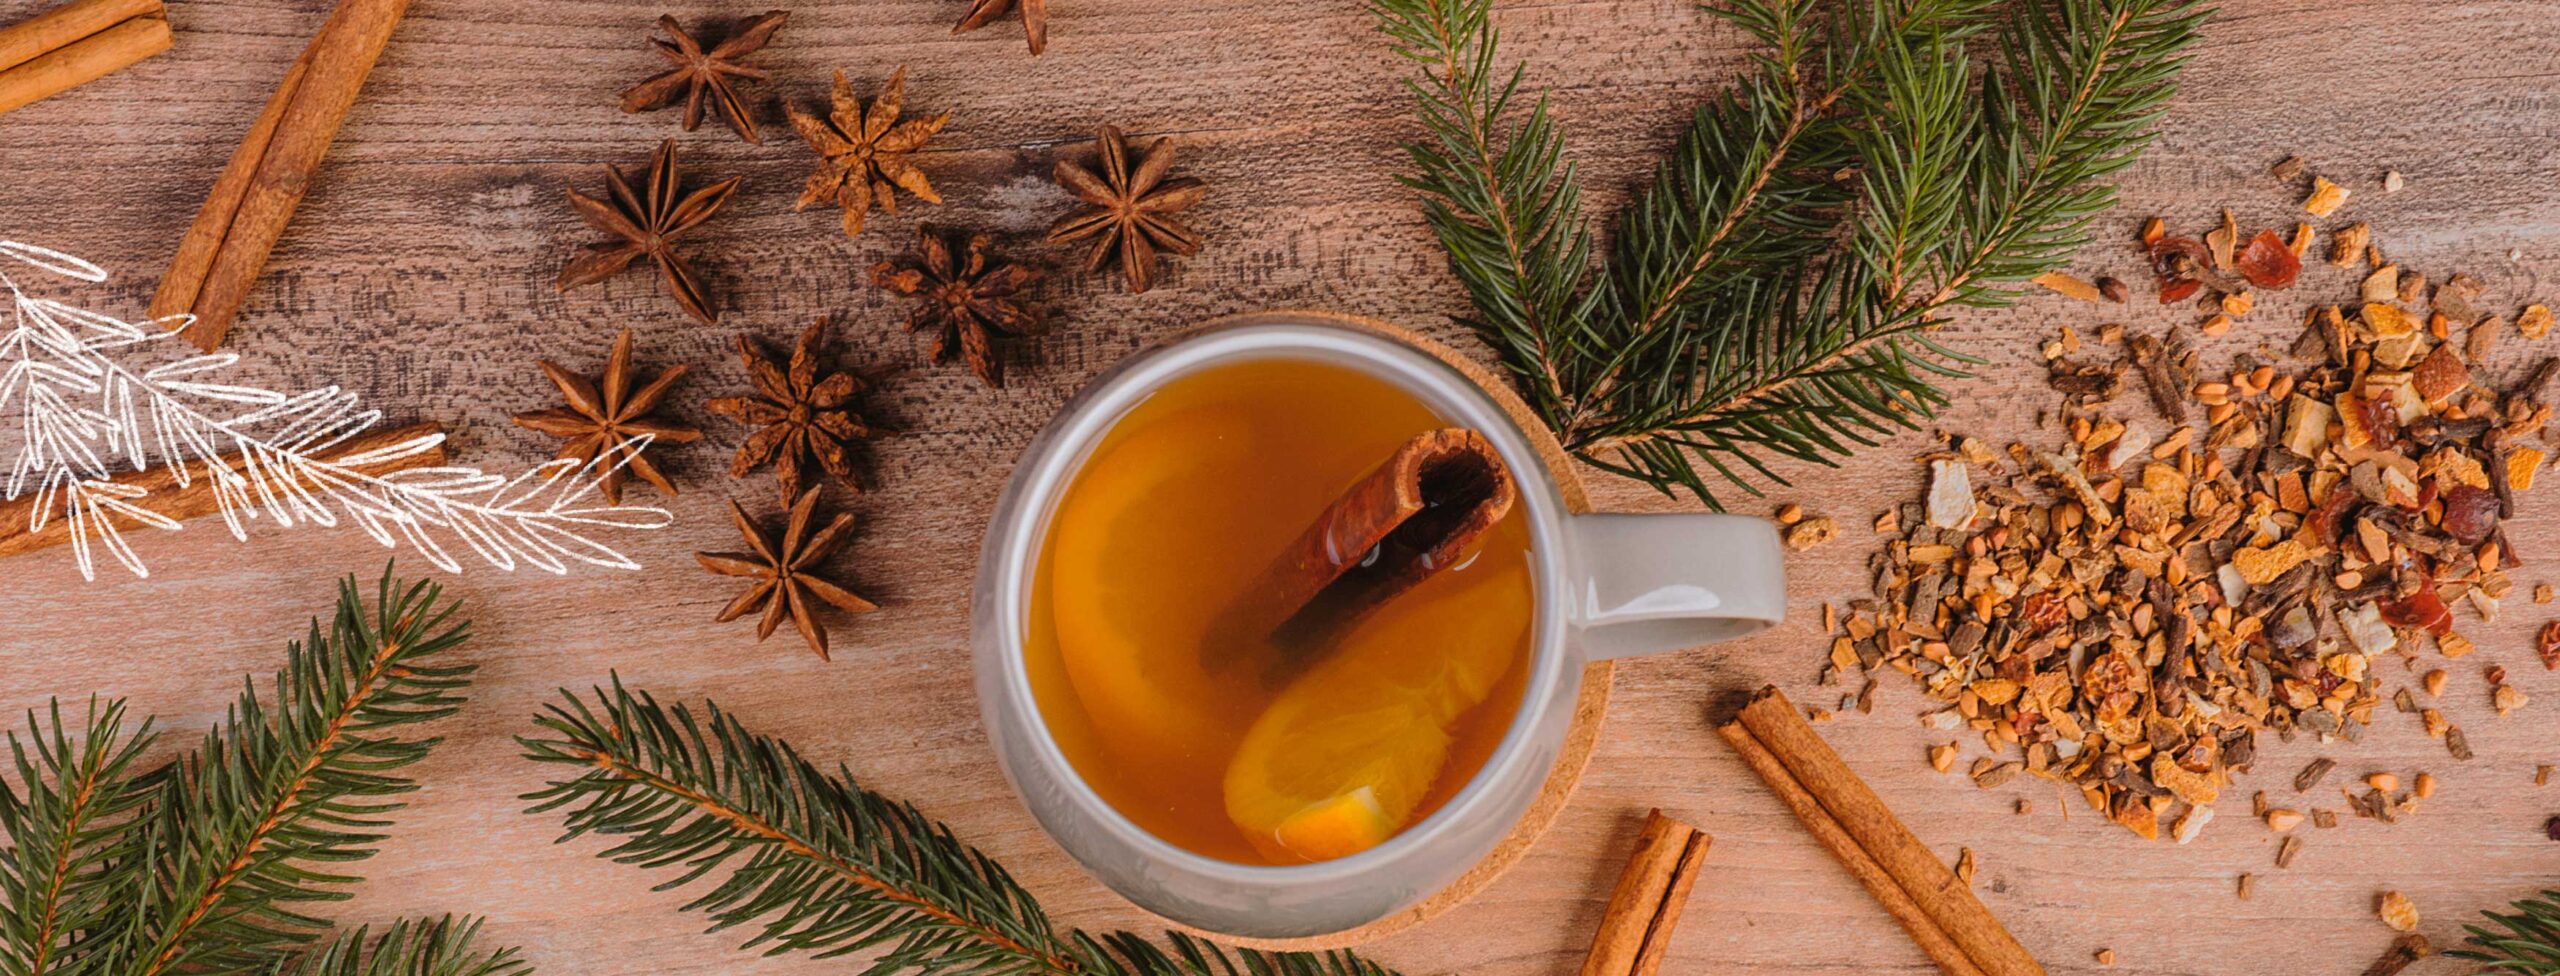 Weihnachtlicher Hintergrund mit Tannenzweigen, Zimtstangen und getrockneten Apfelstücken. In der Mitte befindet sich eine Teetasse gefüllt mit einer winterlichen Teemischung.